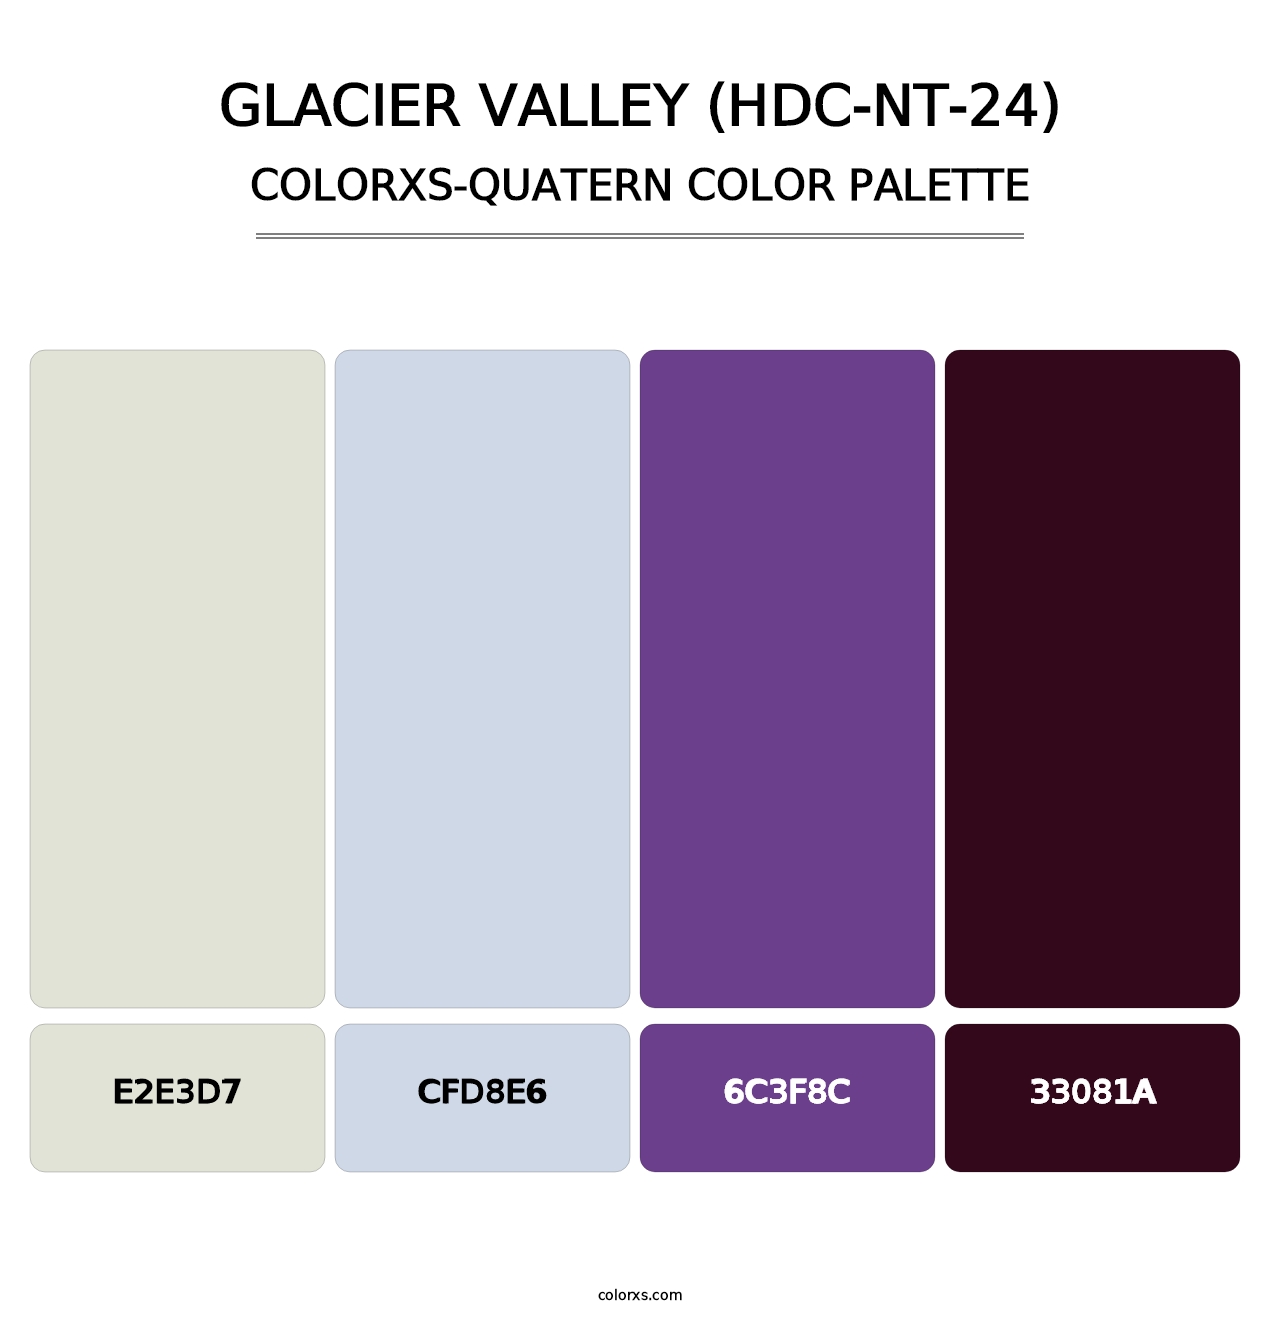 Glacier Valley (HDC-NT-24) - Colorxs Quatern Palette